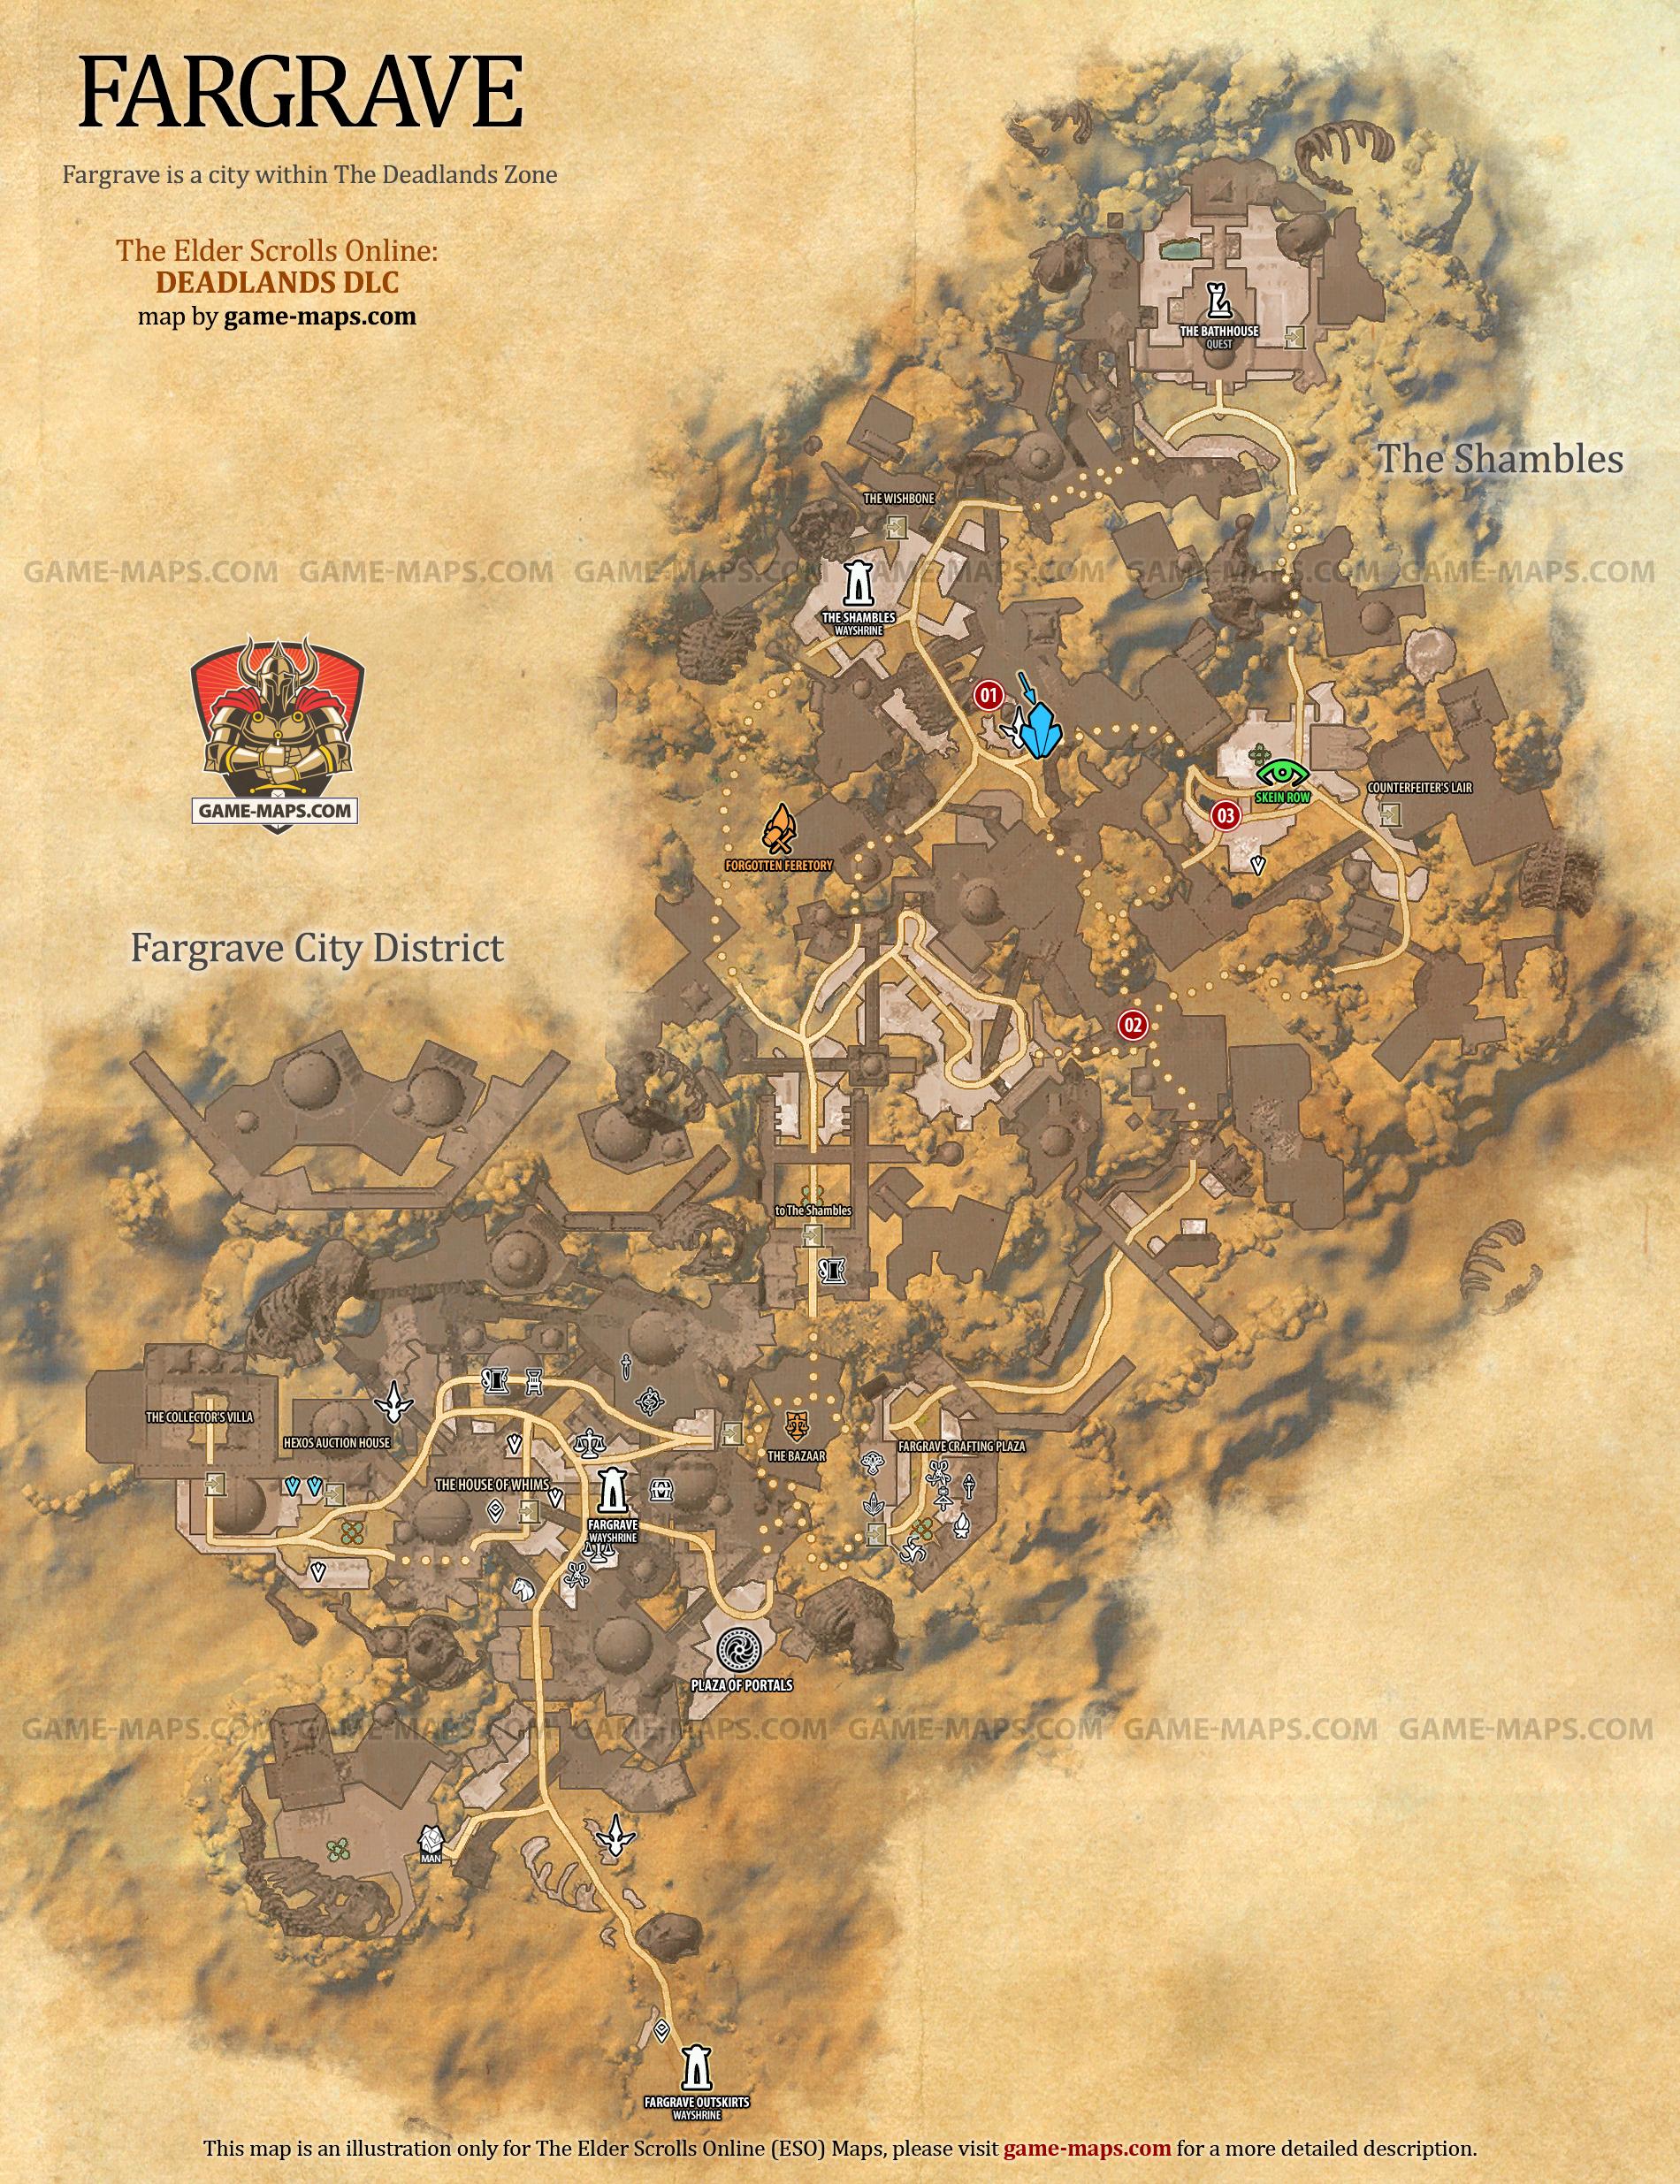 Fargrave Map for The Elder Scrolls Online: Deadlands DLC, The Gates of Oblivion 2021 Adventure (ESO).